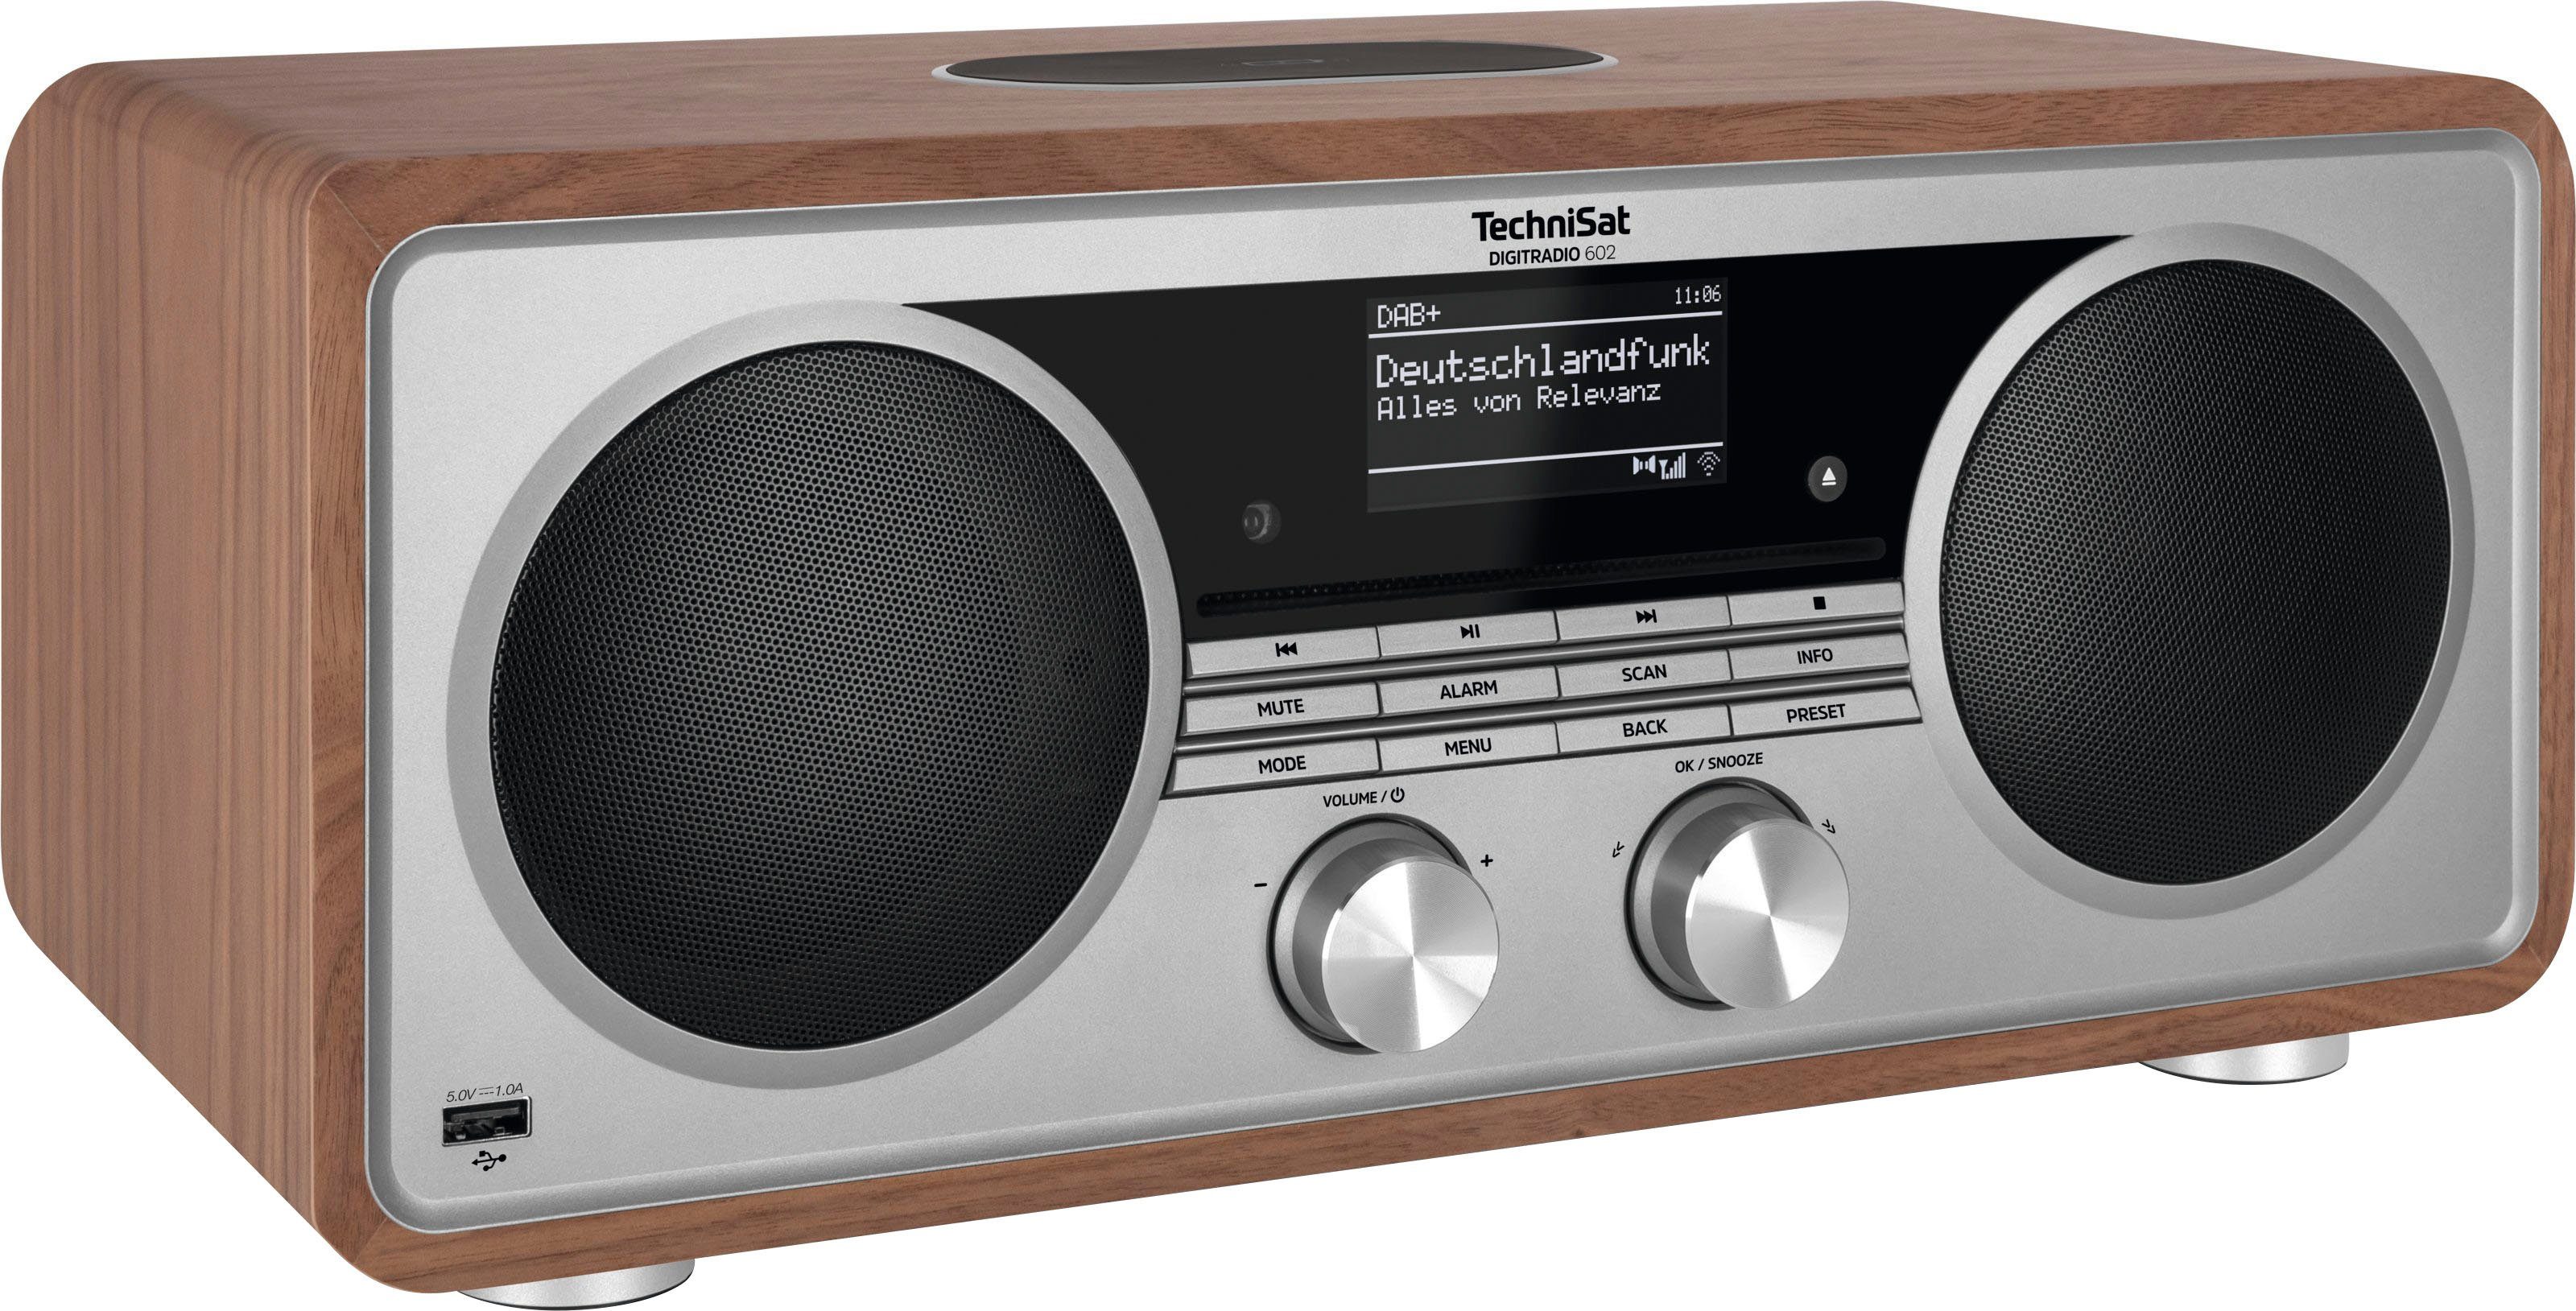 Stereoanlage, 602 70 Nussbaum/Silber UKW TechniSat W, mit Internet-Radio (Digitalradio CD-Player) RDS, (DAB), DIGITRADIO